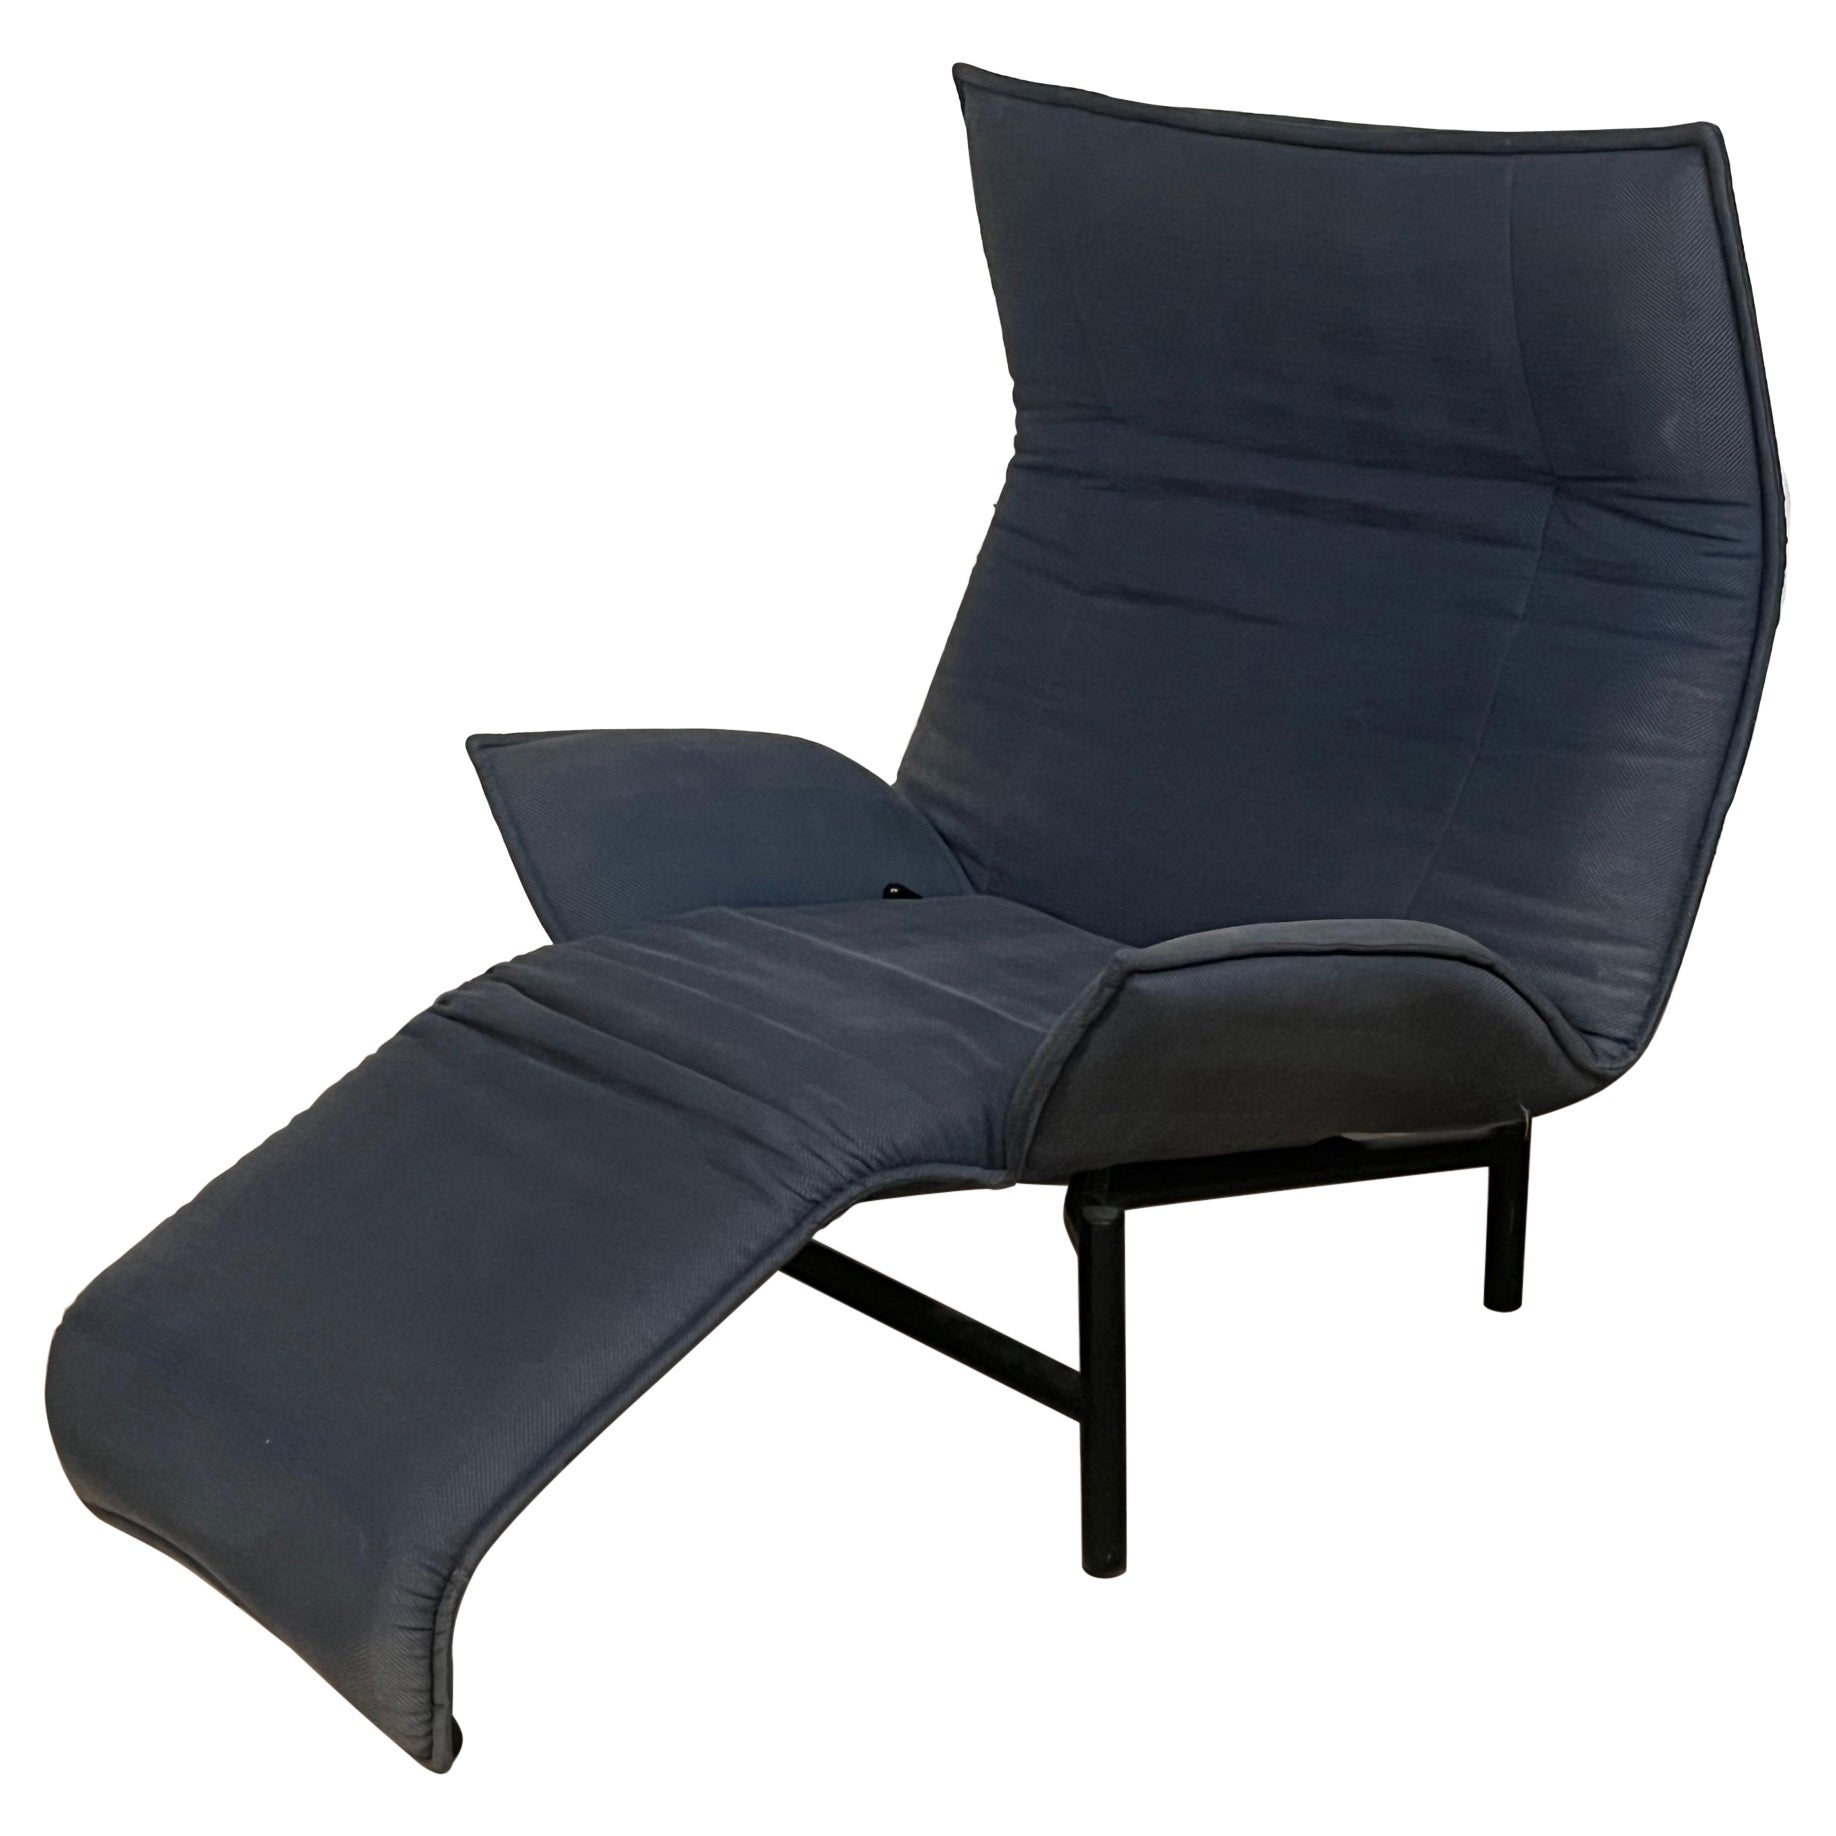 Vico Magistretti “Veranda” Lounge Chair for Cassina, Italy For Sale